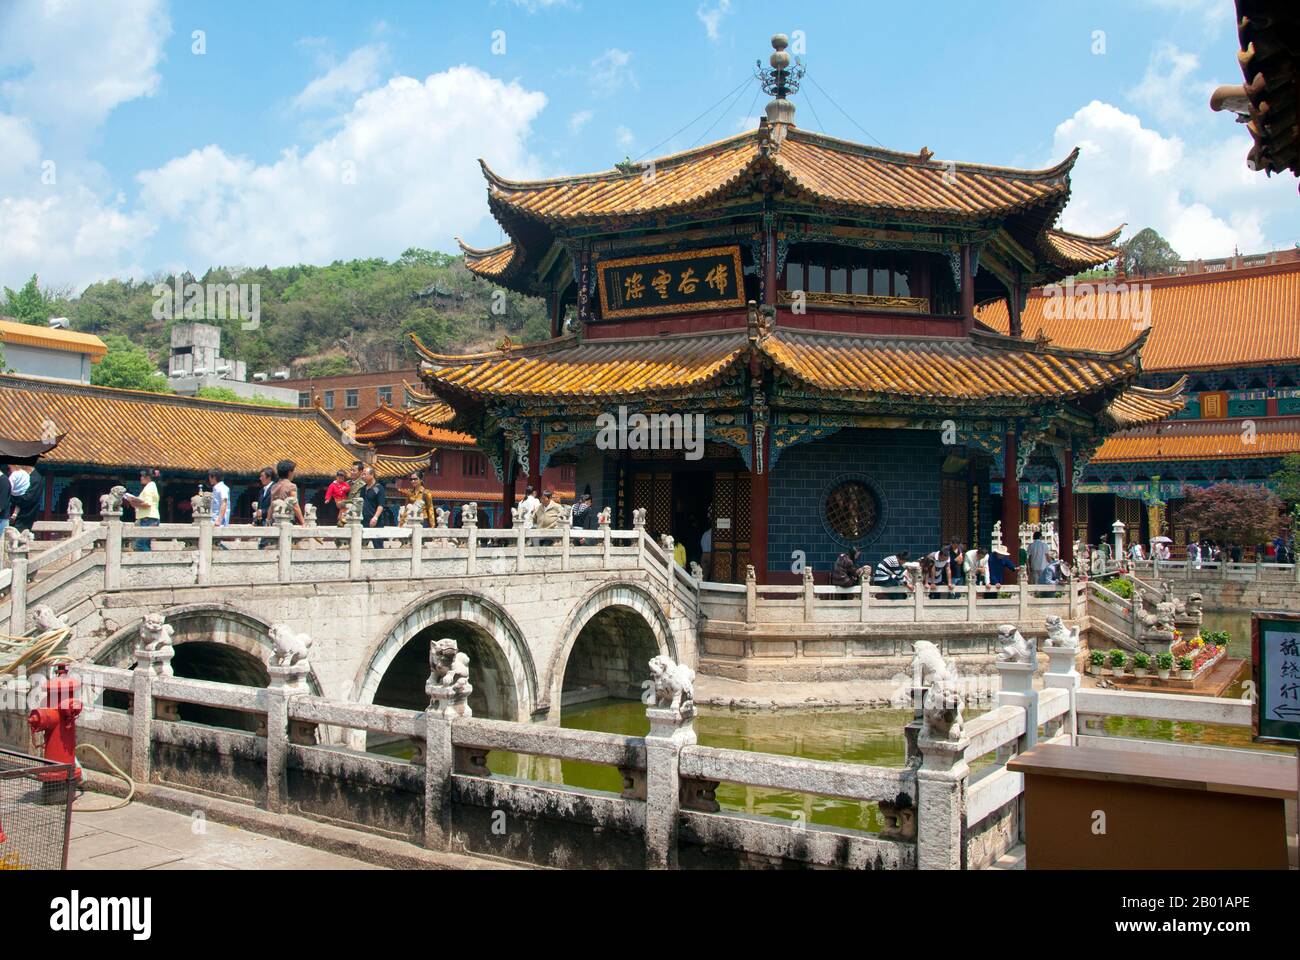 China: Achteckiger Pavillon der Qing-Ära, Yuantong Si (Yuantong-Tempel), Kunming, Provinz Yunnan. Der Yuantong Tempel stammt ursprünglich aus dem Königreich Nanzhao zur Zeit der Tang Dynastie (618-907). Nach zwei großen Restaurierungen und Erweiterungen in der Chenghua-Periode (1465-1487) der Ming-Dynastie und dem 24.. Jahr der Herrschaft von Kaiser Kangxi (1686) in der Qing-Dynastie, nahm der Tempel sein heutiges Design an, mit überdachten Korridoren, Brücken und großen Hallen. Nanzhao (auch Nanchao und Nan Chao) war ein buddhistisches Königreich, das im heutigen Südchina und Südostasien (8.-9. Jahrhundert) blühte. Stockfoto